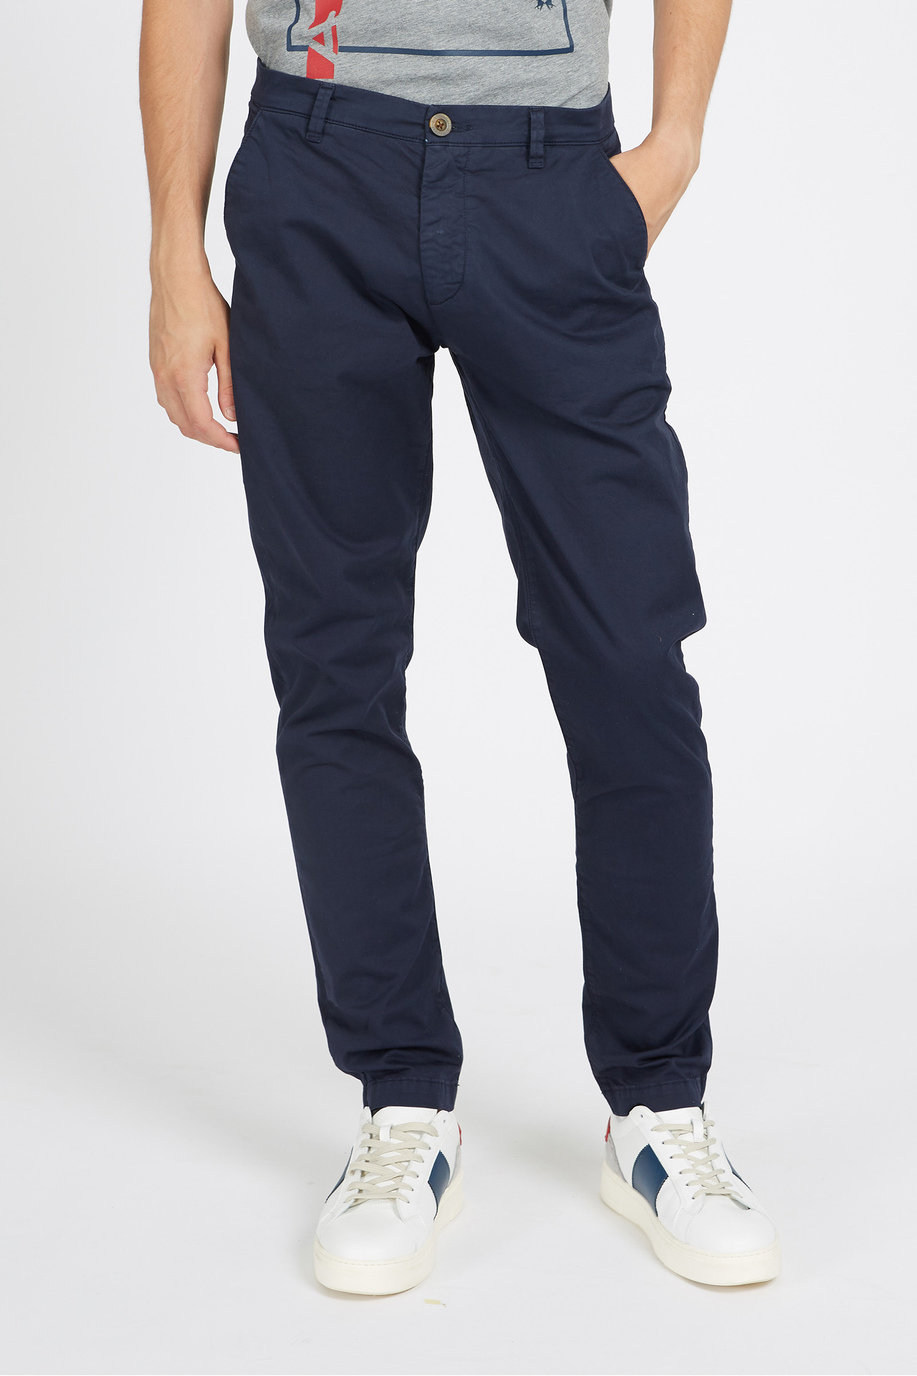 Pantalone da uomo in cotone chino elasticizzato slim fit  -  Siard - Pantaloni | La Martina - Official Online Shop